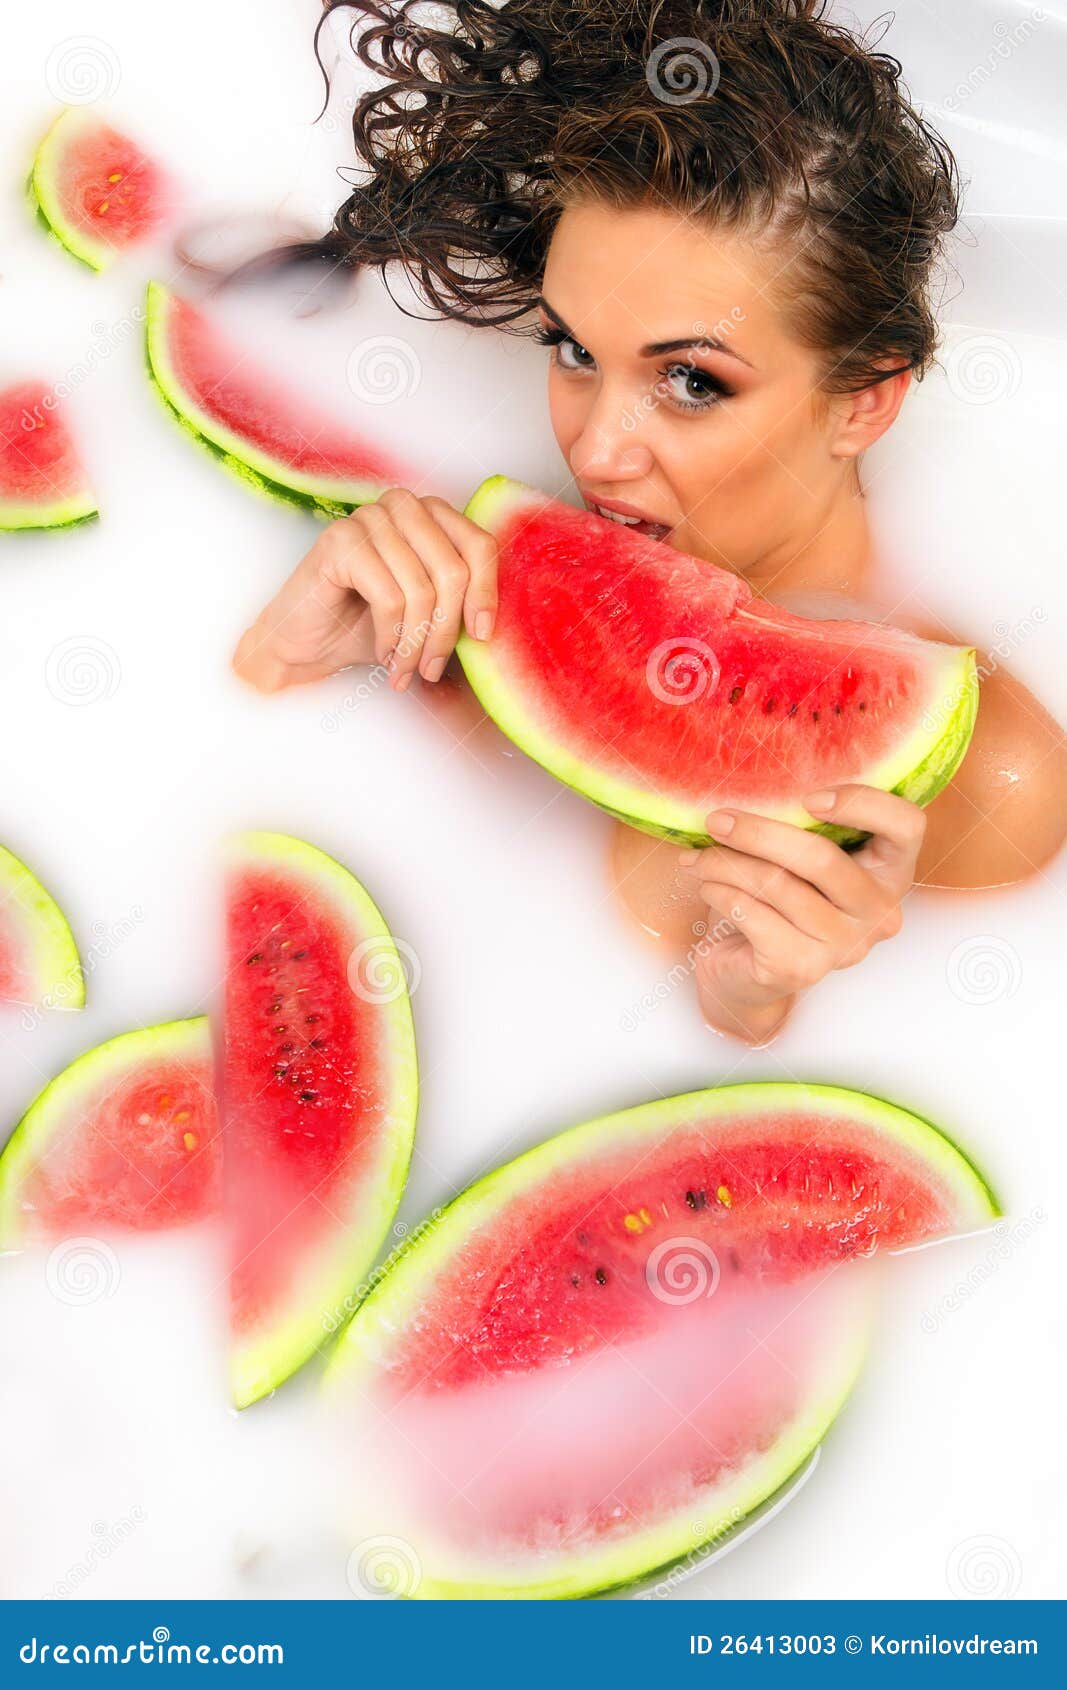 girl enjoys a bath with milk and watermelon.